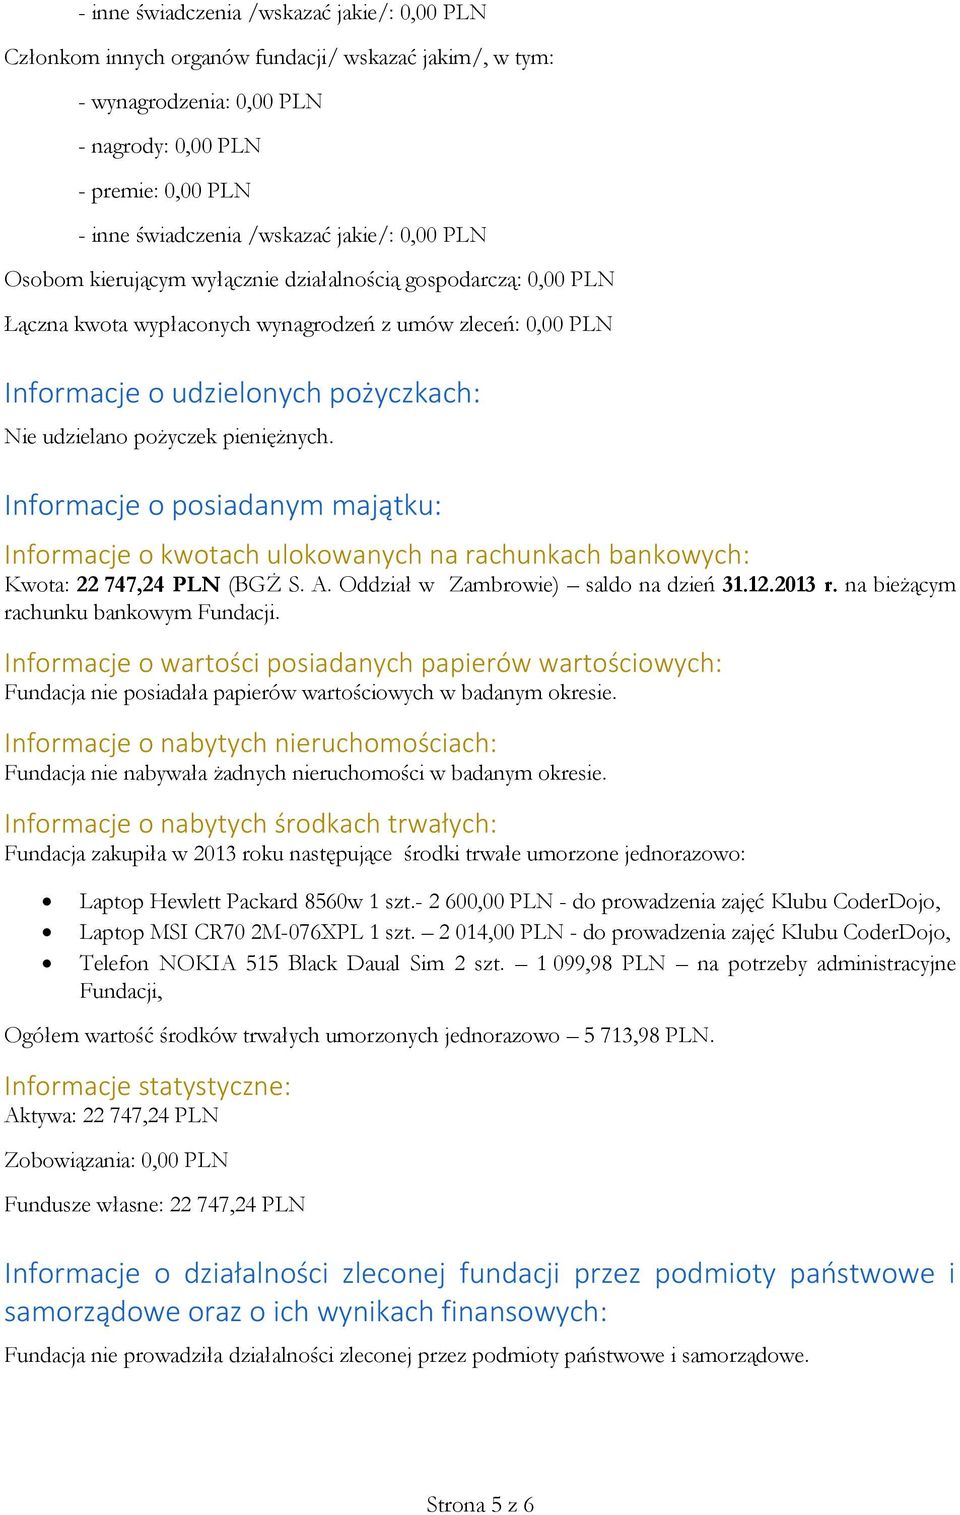 pożyczek pieniężnych. Informacje o posiadanym majątku: Informacje o kwotach ulokowanych na rachunkach bankowych: Kwota: 22 747,24 PLN (BGŻ S. A. Oddział w Zambrowie) saldo na dzień 31.12.2013 r.